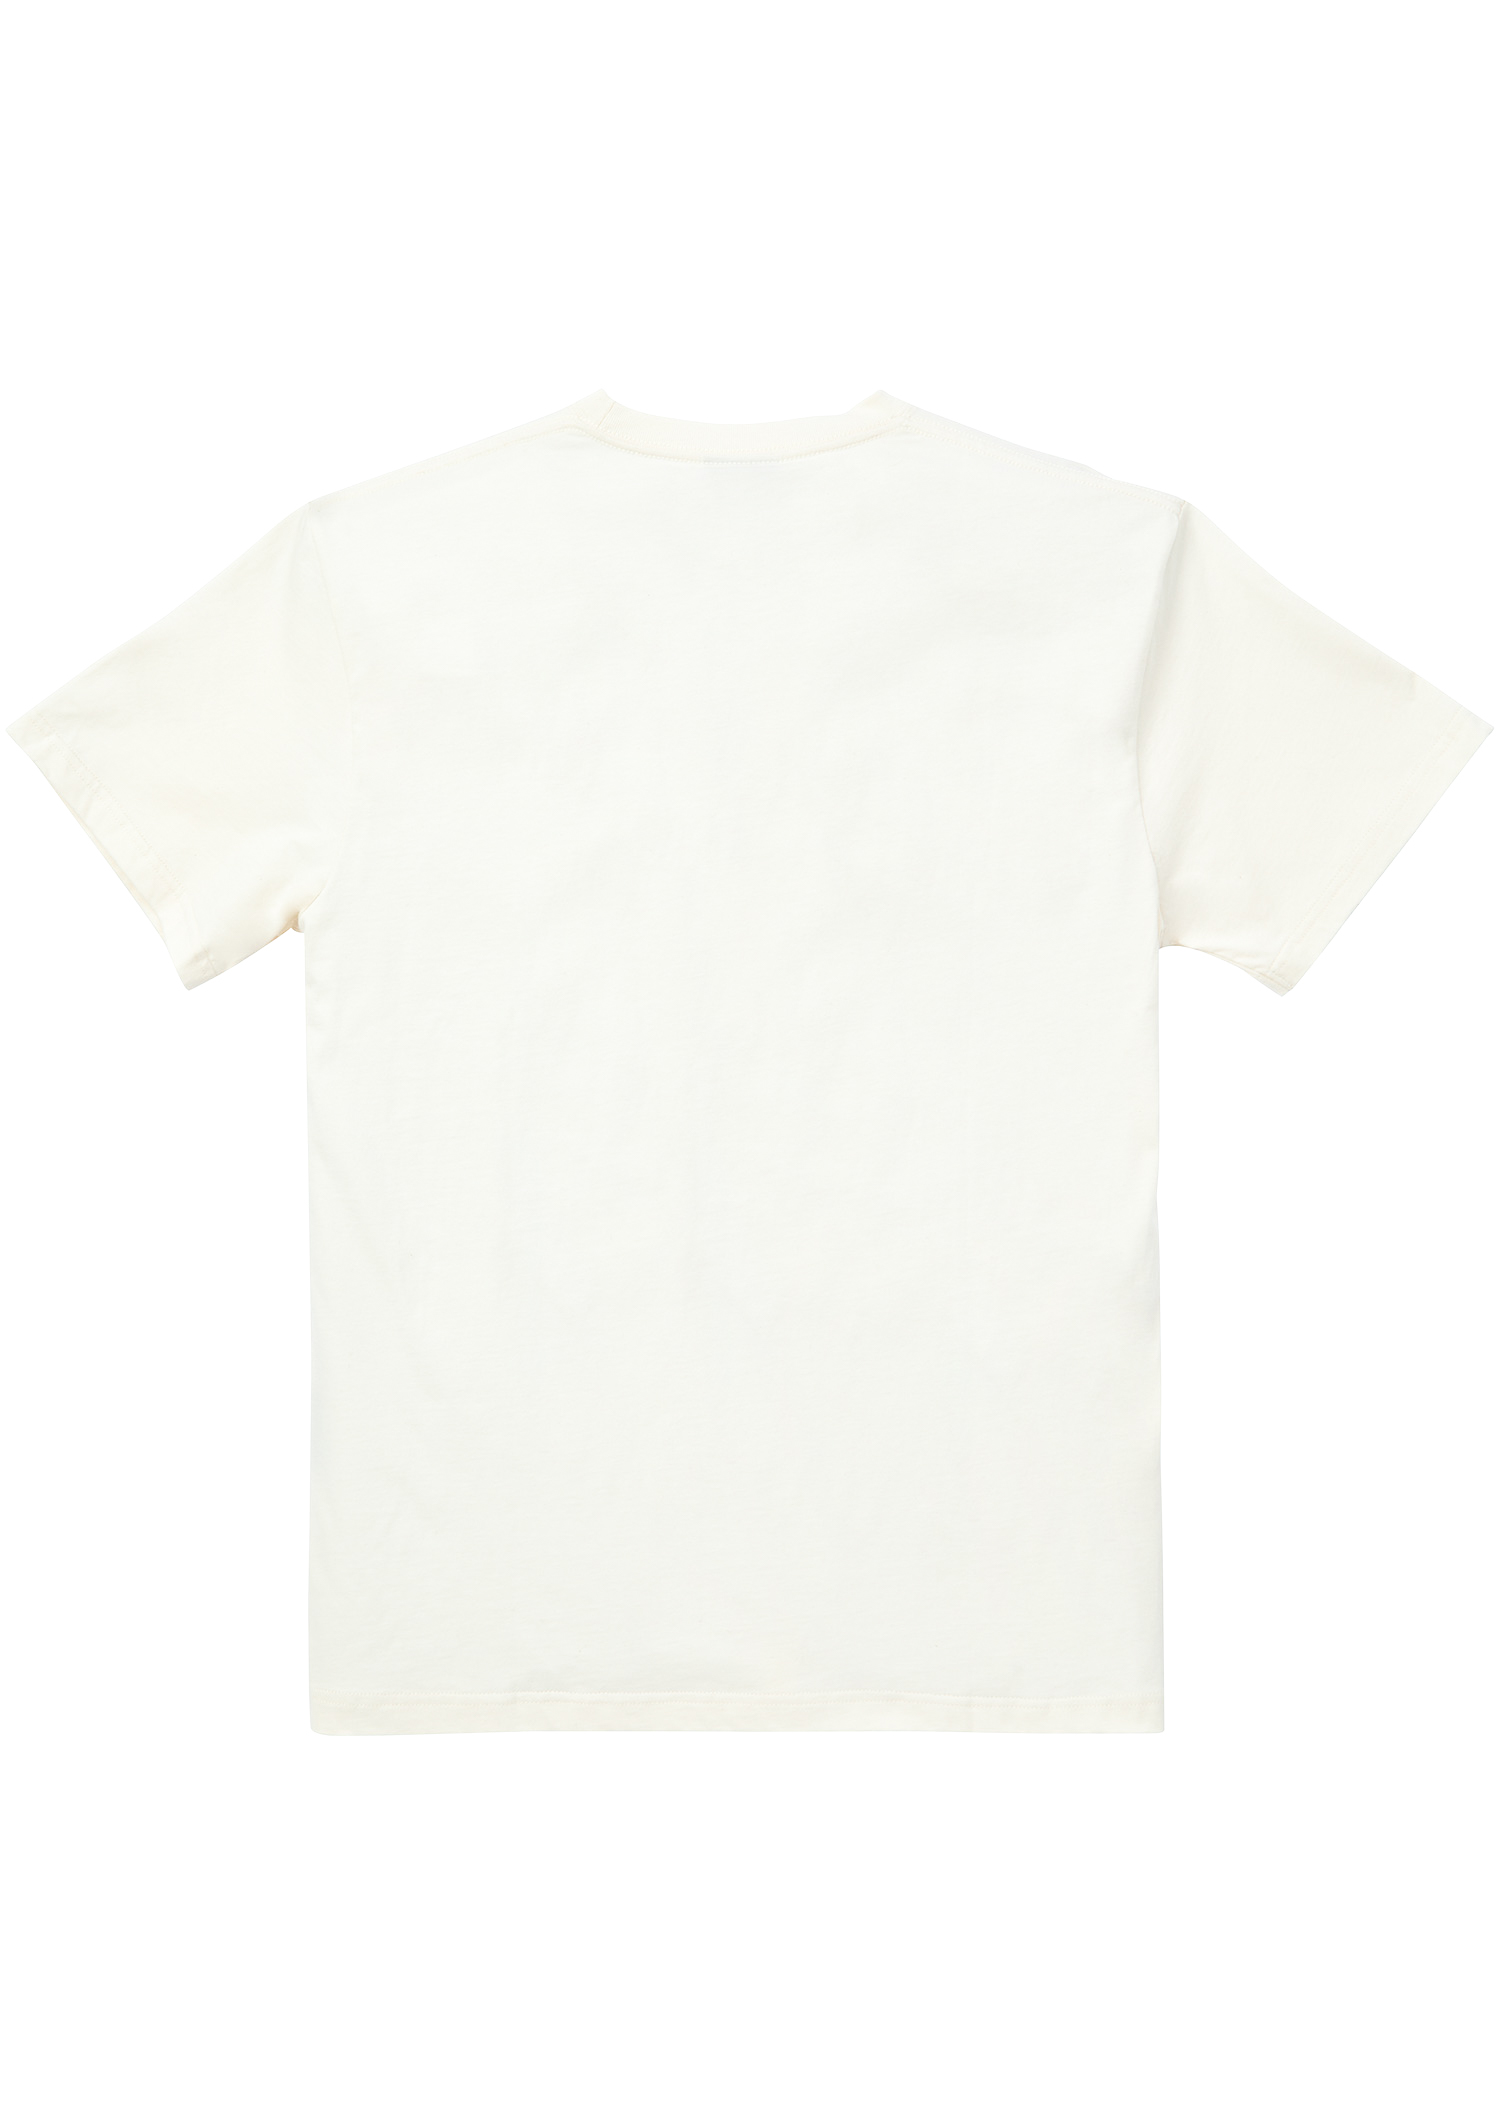 T-Shirt St. Pauli "Raw Dyed"